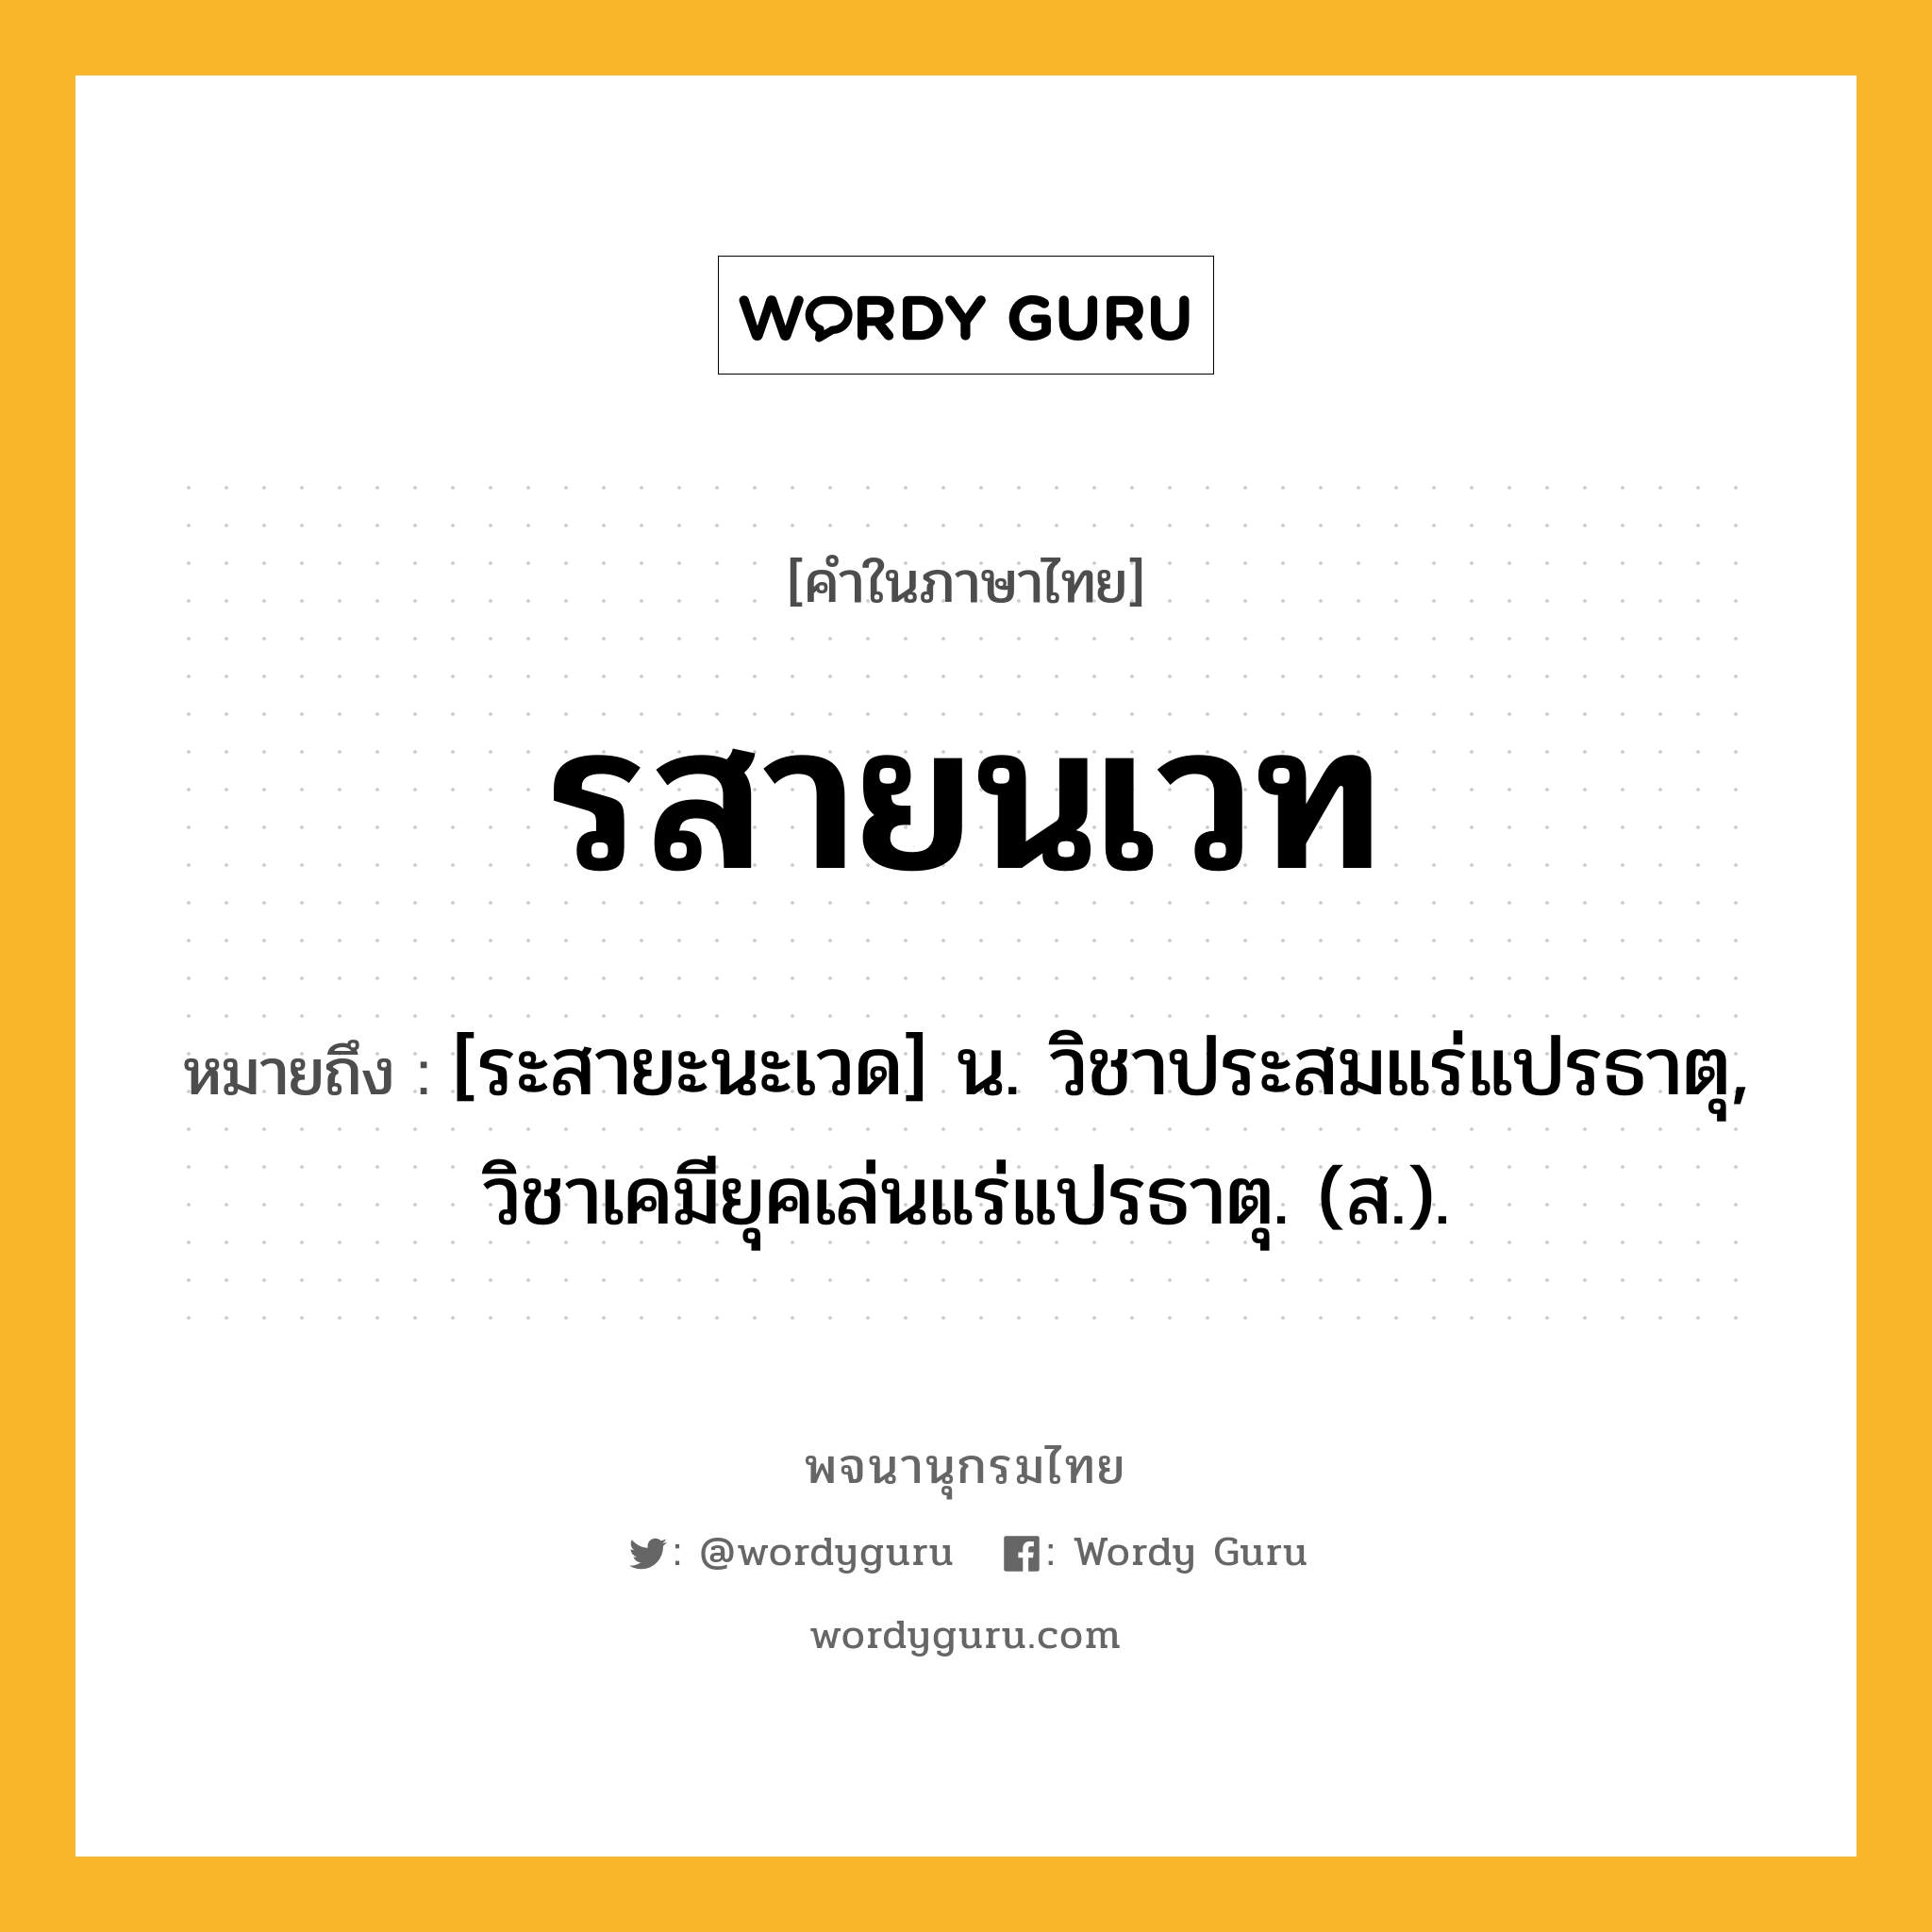 รสายนเวท หมายถึงอะไร?, คำในภาษาไทย รสายนเวท หมายถึง [ระสายะนะเวด] น. วิชาประสมแร่แปรธาตุ, วิชาเคมียุคเล่นแร่แปรธาตุ. (ส.).